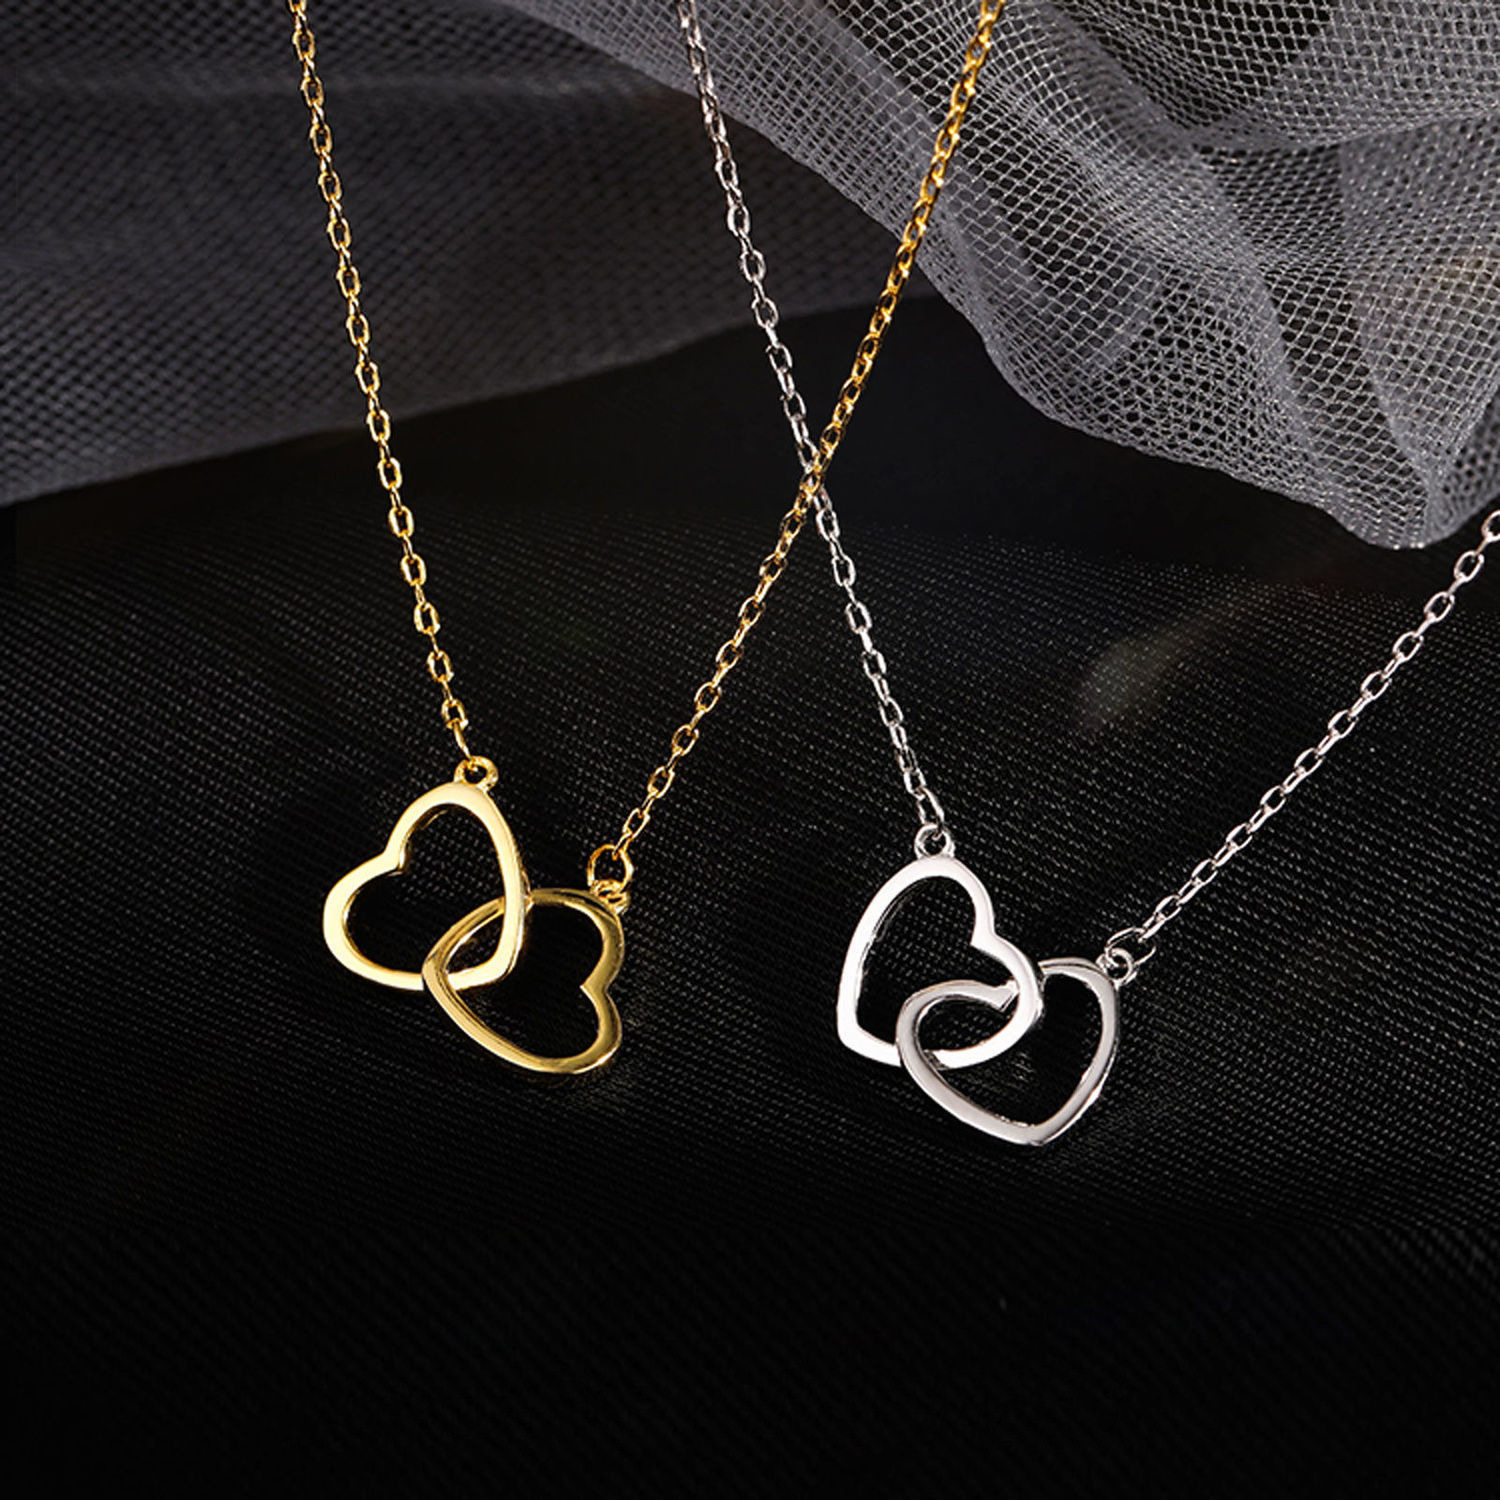 สร้อยคอไทเทเนียมสตีลไม่ซีดจางสร้อยคอโซ่กระดูกไหปลาร้าหัวใจพีชTitanium steel non-fading necklace peach heart clavicle chain necklace